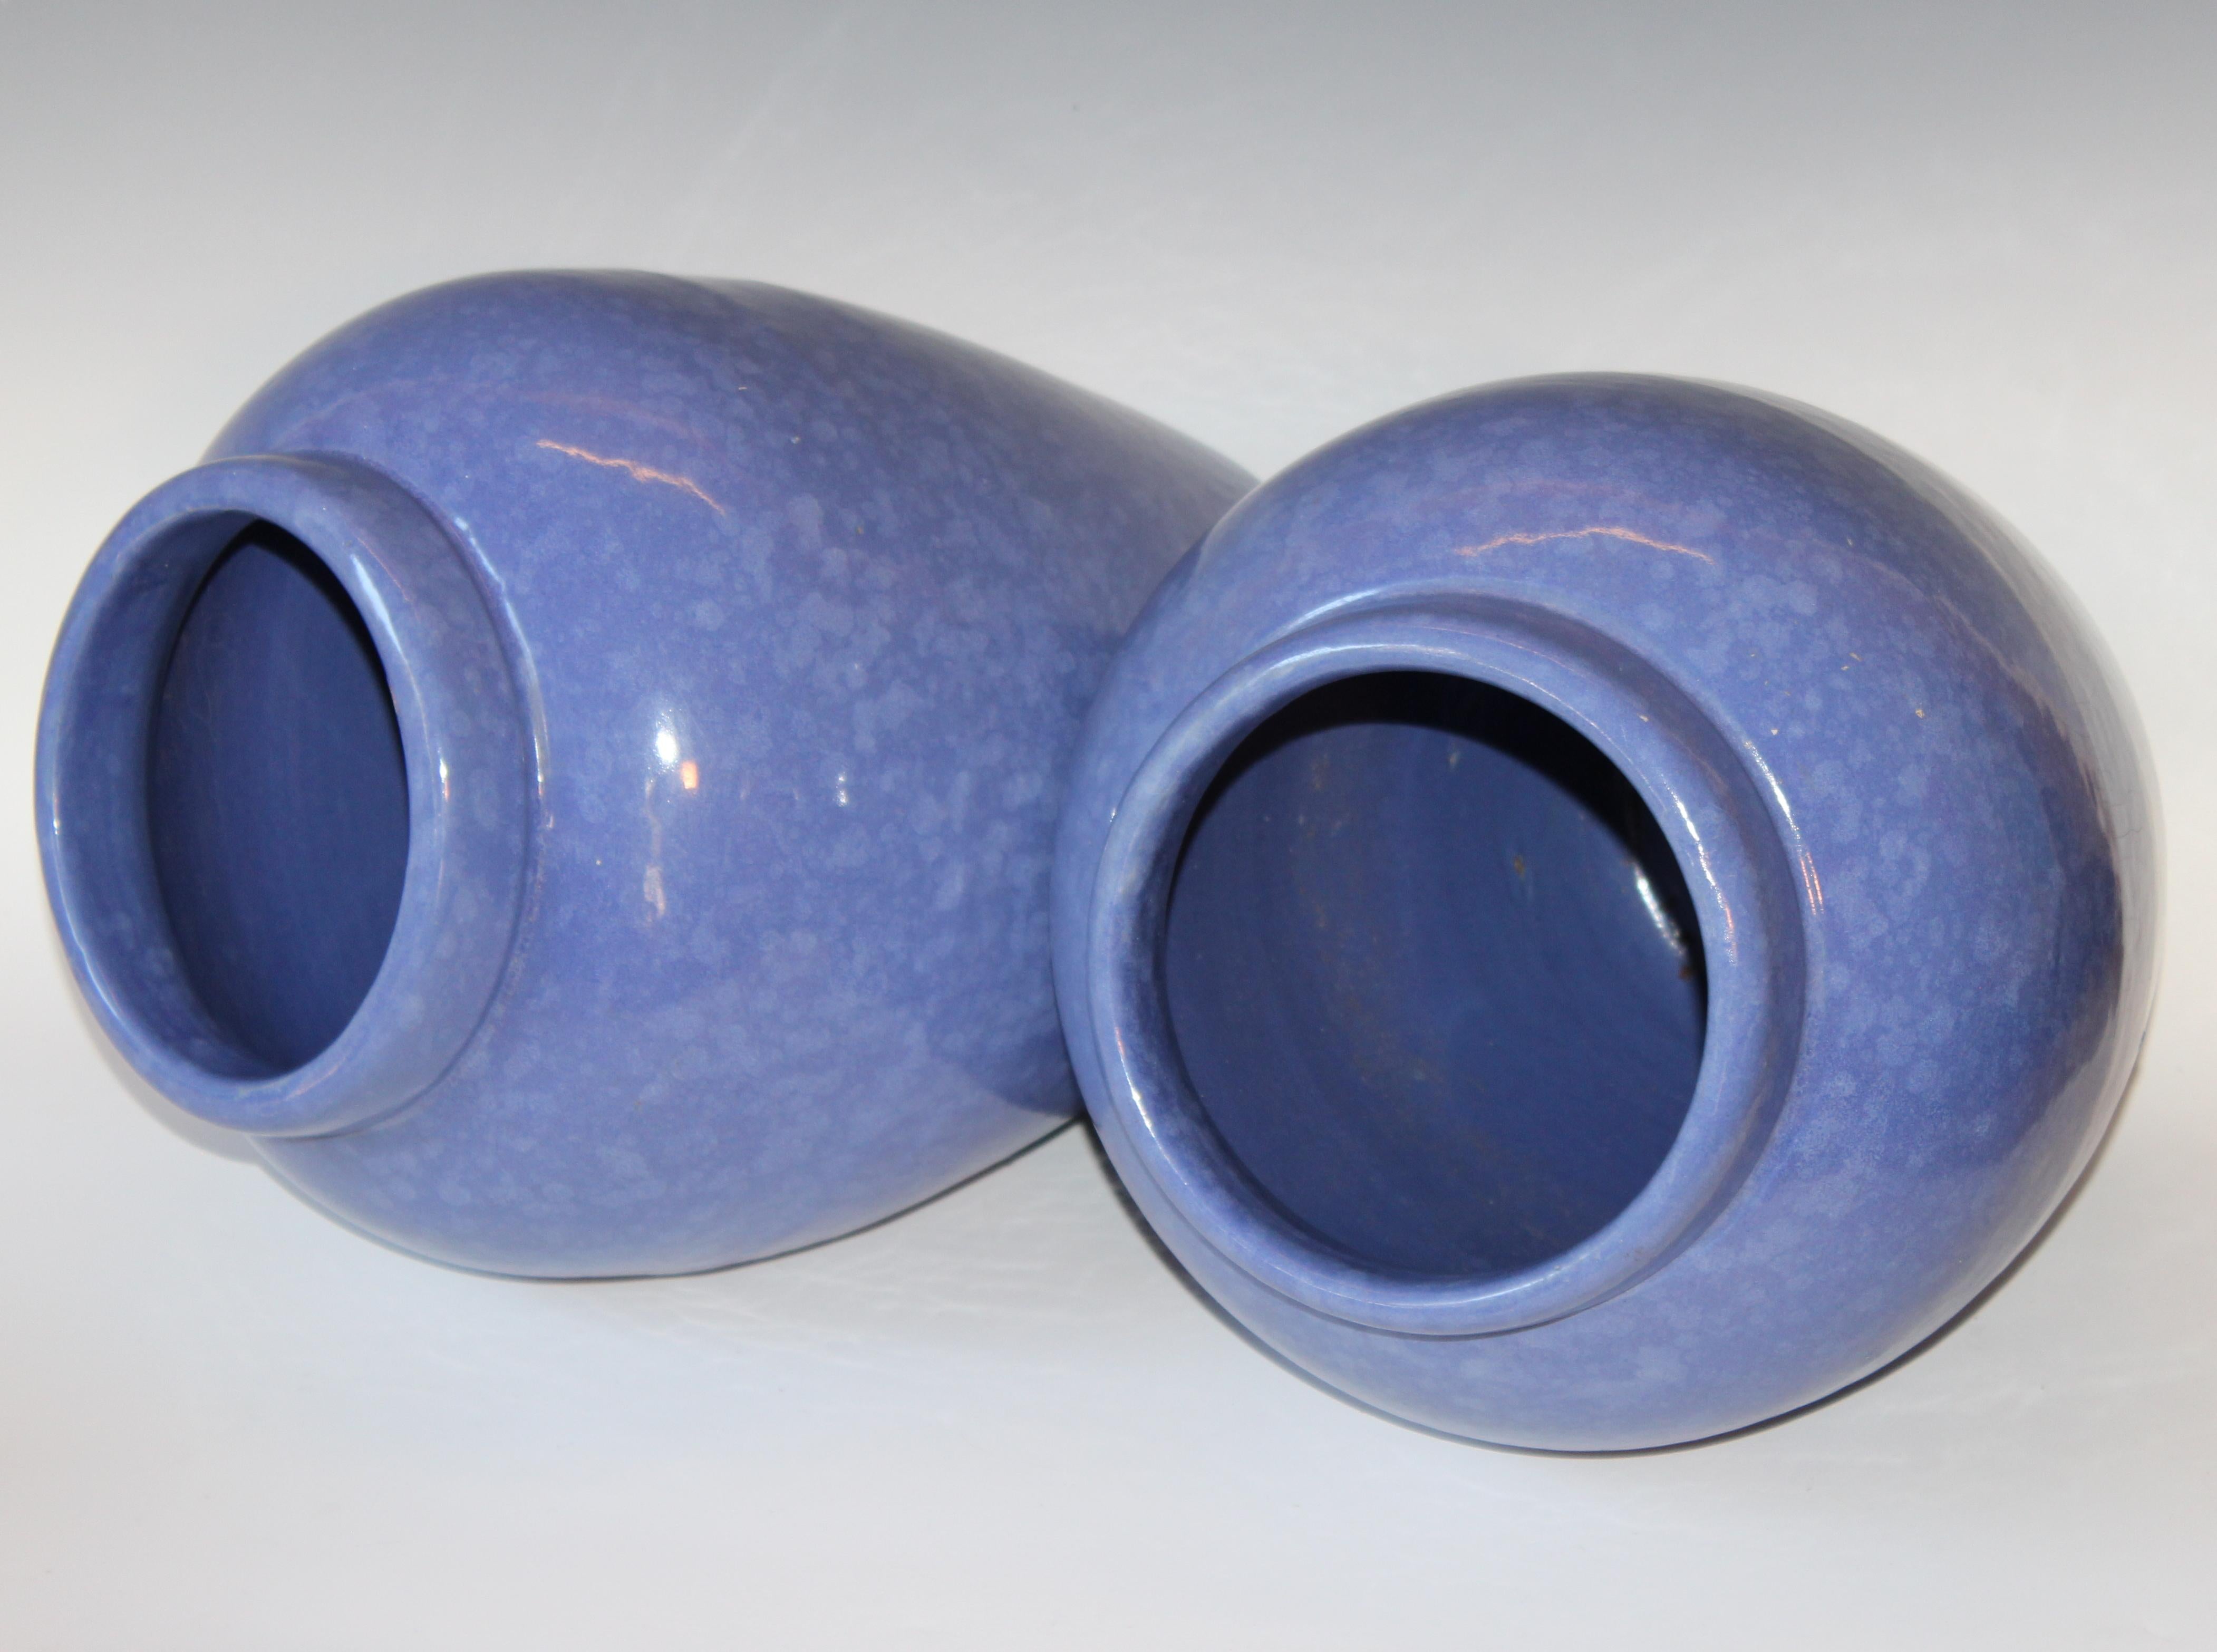 Molded RRP CO Oil Jars McCoy Vases Mottled Blue Large Vintage Floor Pottery Urns, Pair